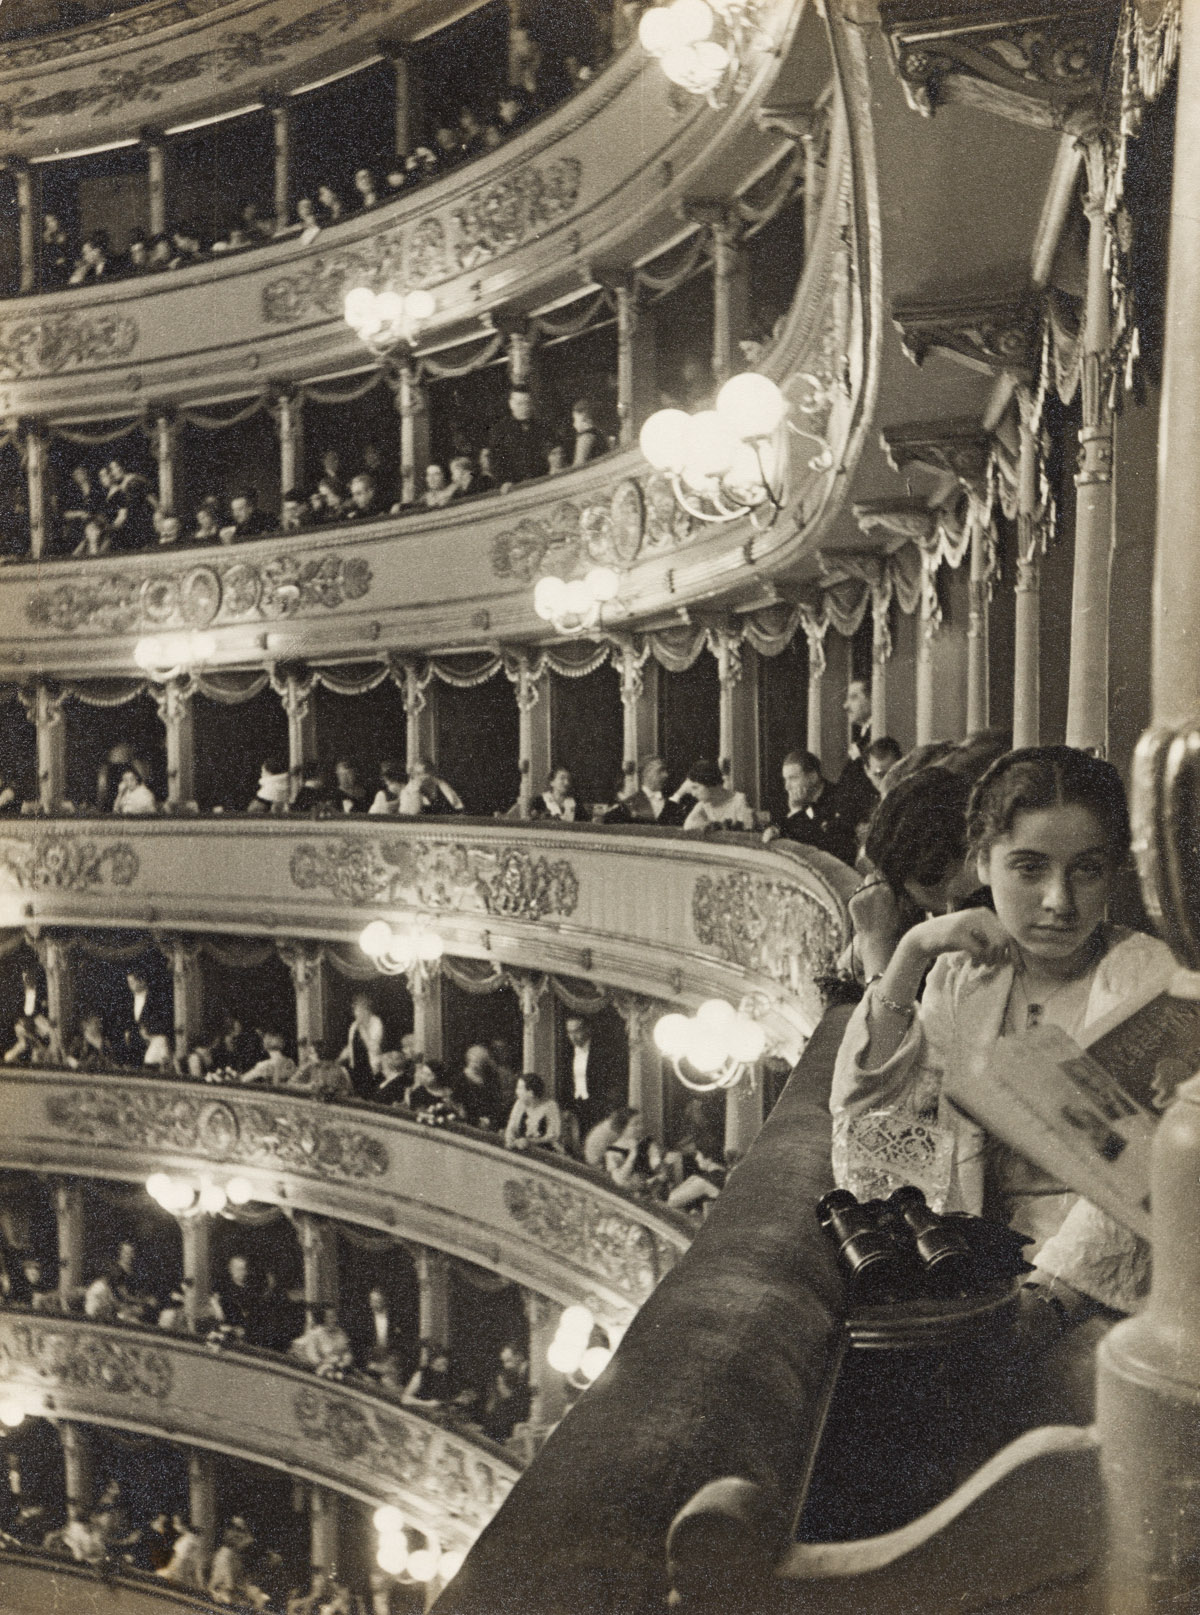 ALFRED EISENSTAEDT (1898-1995) Premiere at La Scala, Milan.